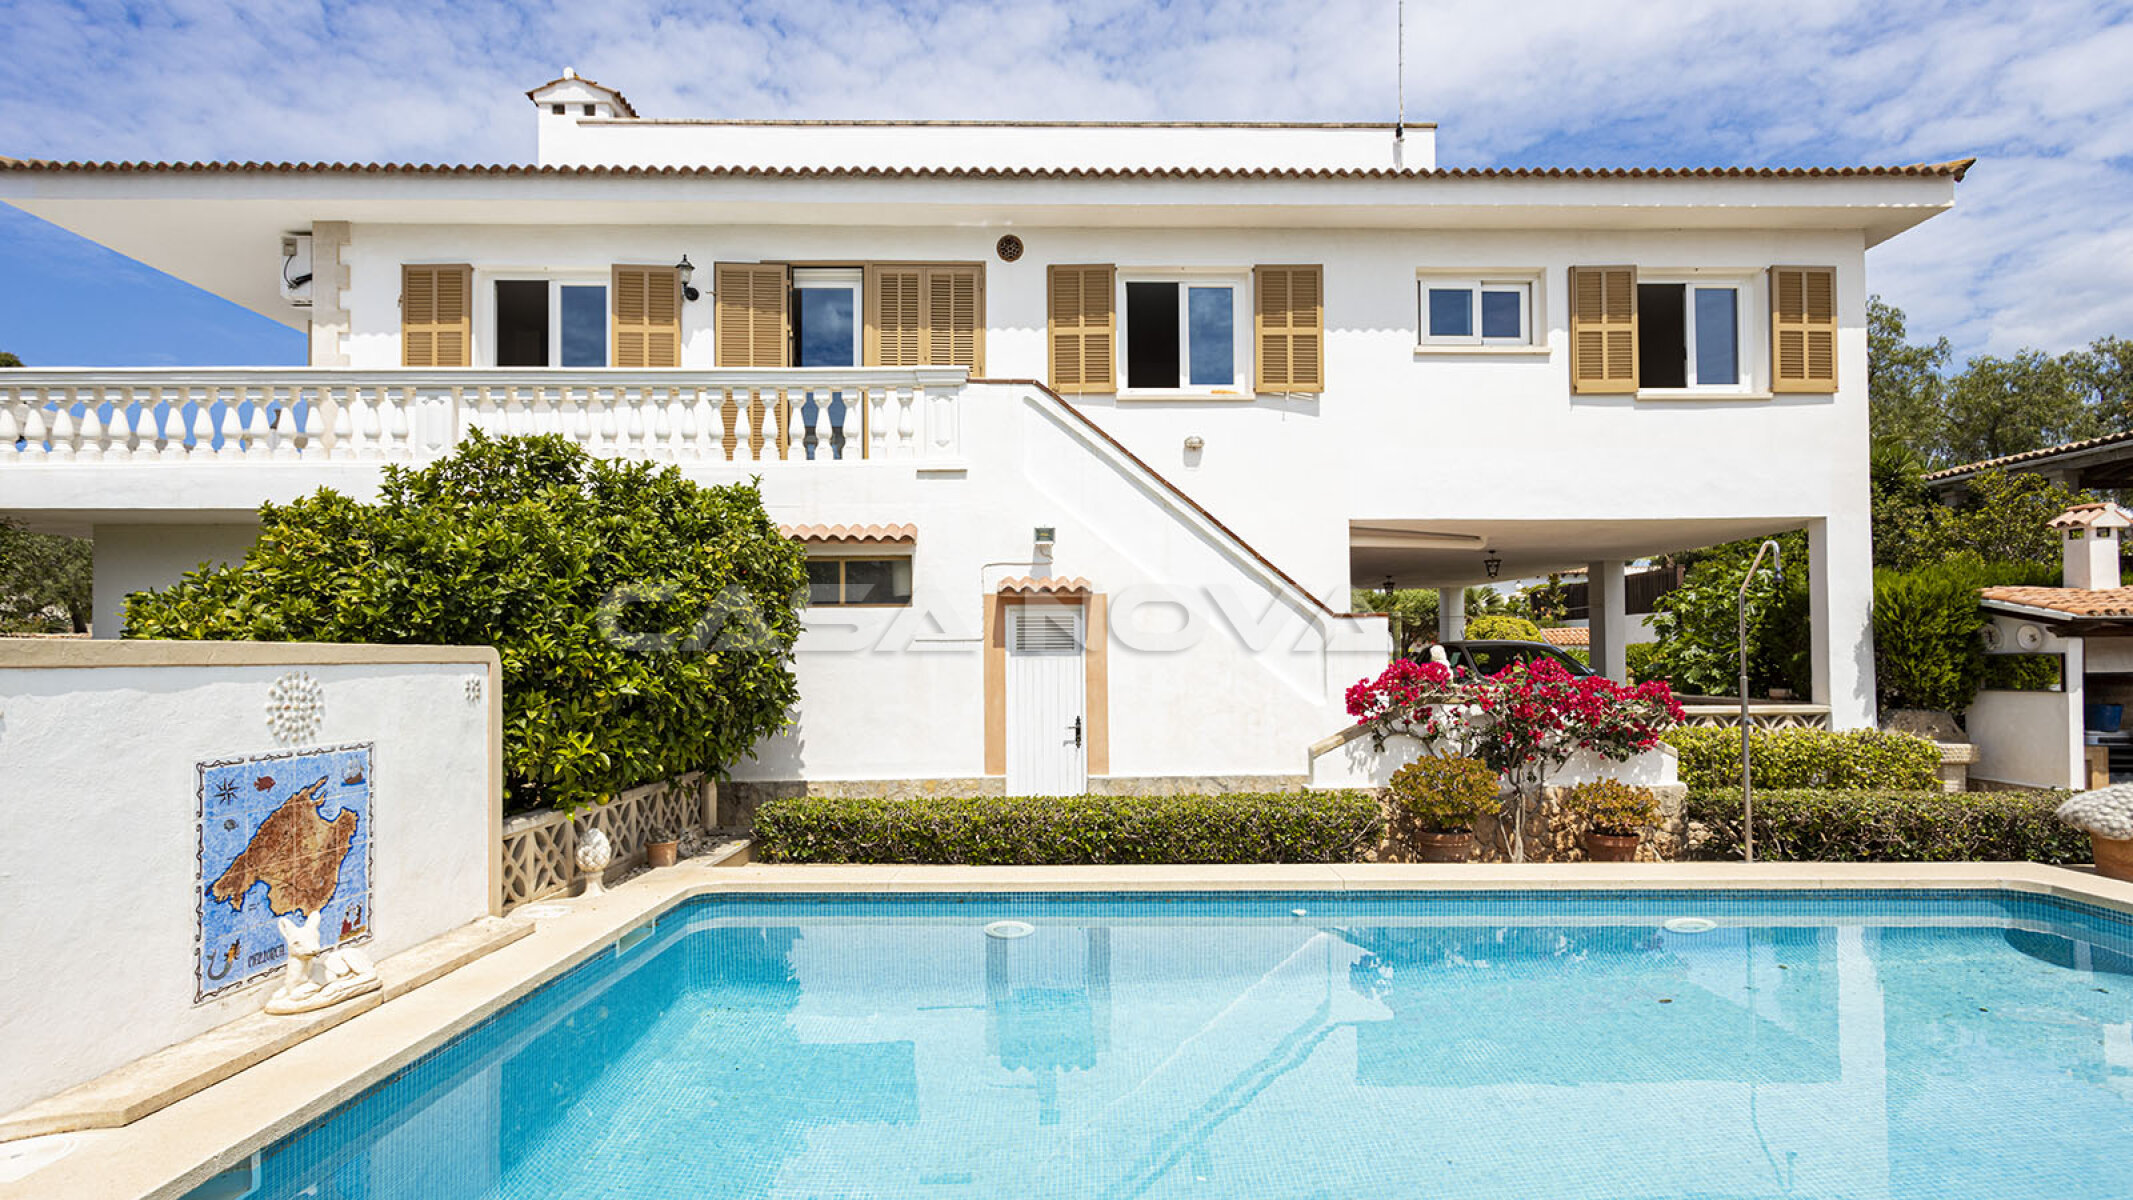 Villa Mallorca  - Repr�sentative Villa im mediterranen Stil 